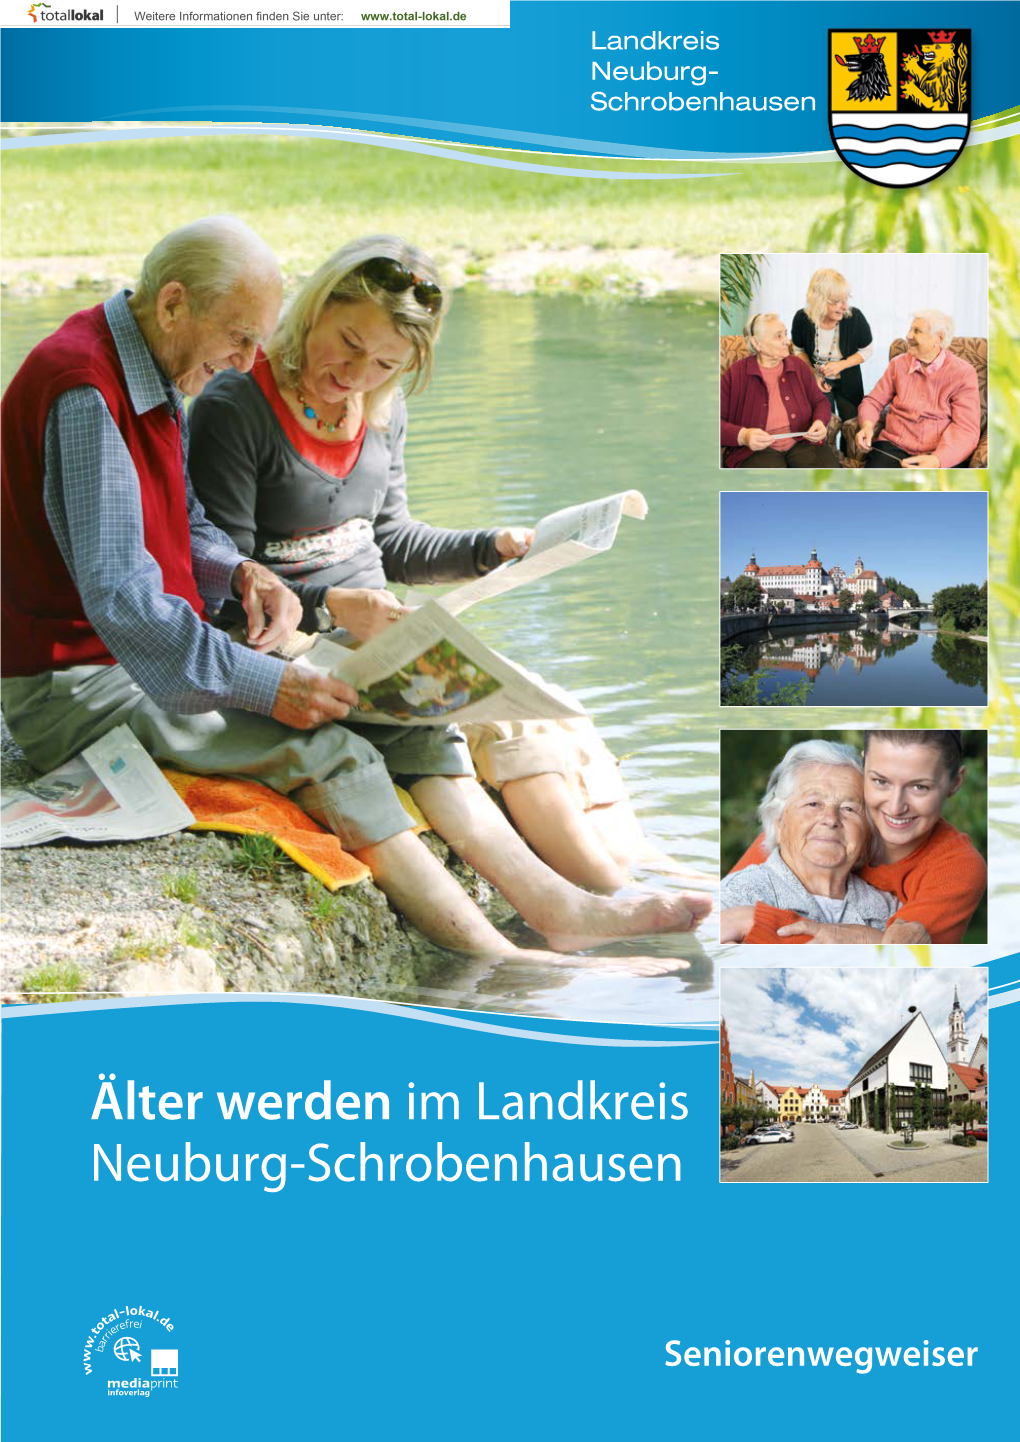 Älter Werden Im Landkreis Neuburg-Schrobenhausen